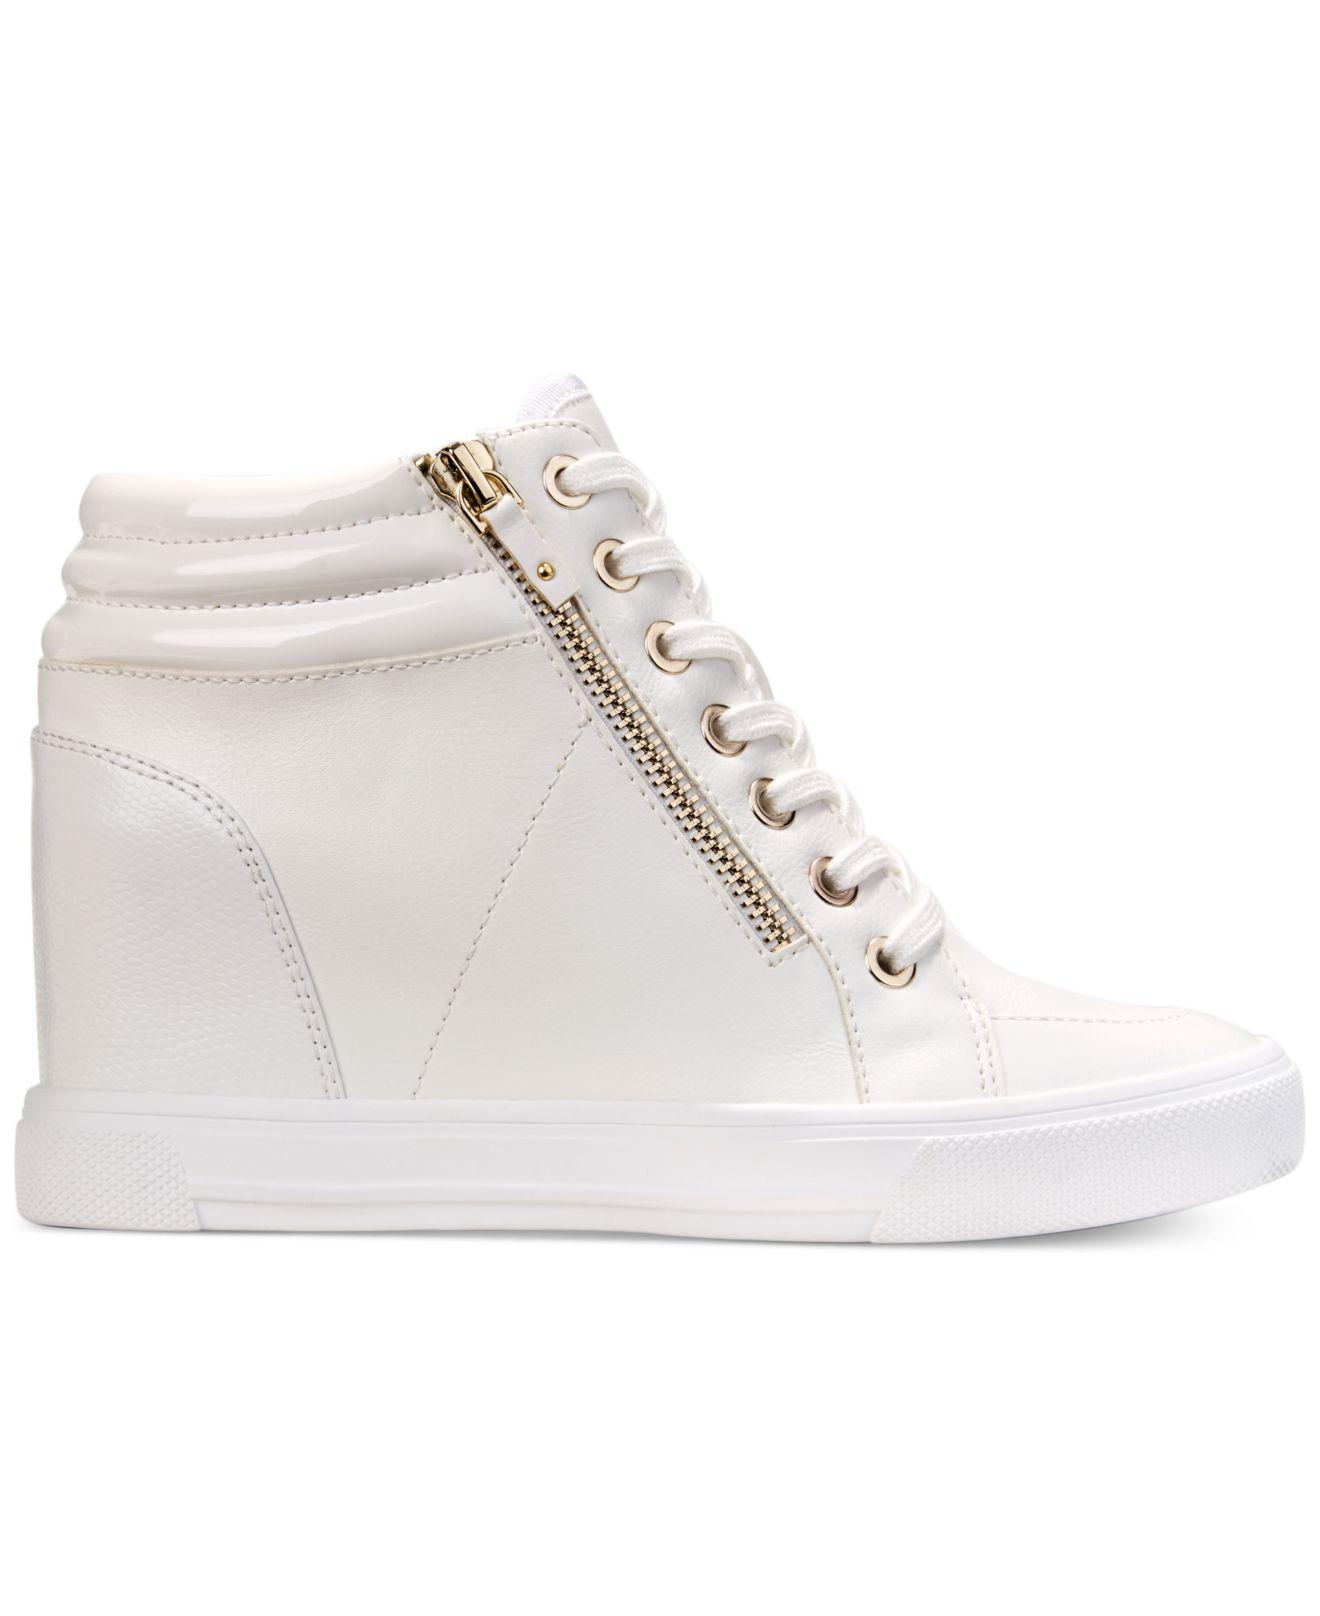 ALDO Kaia Wedge Sneakers White | Lyst